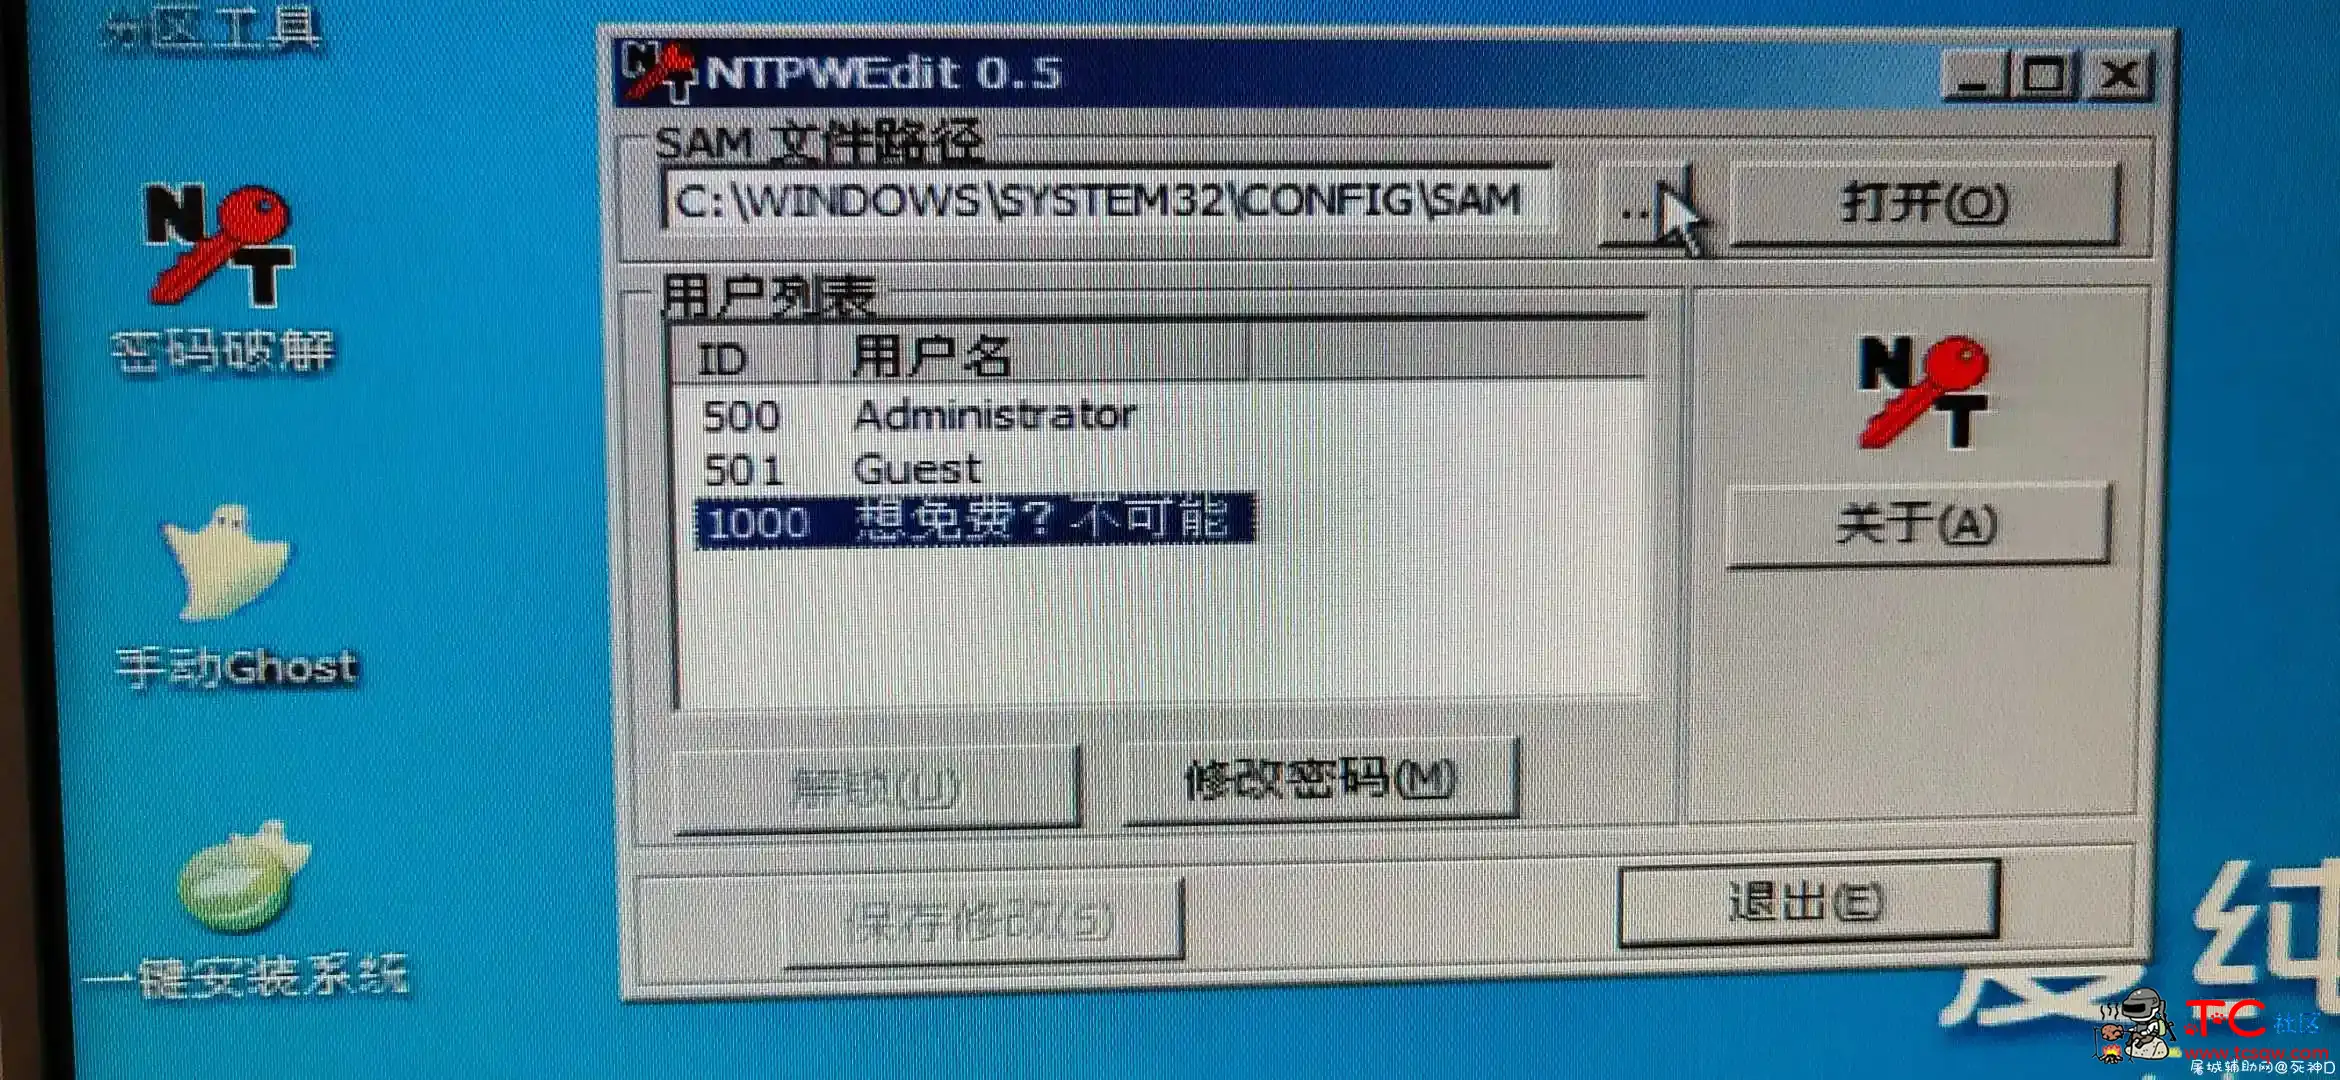 发布锁机软件 屠城辅助网www.tcfz1.com9898